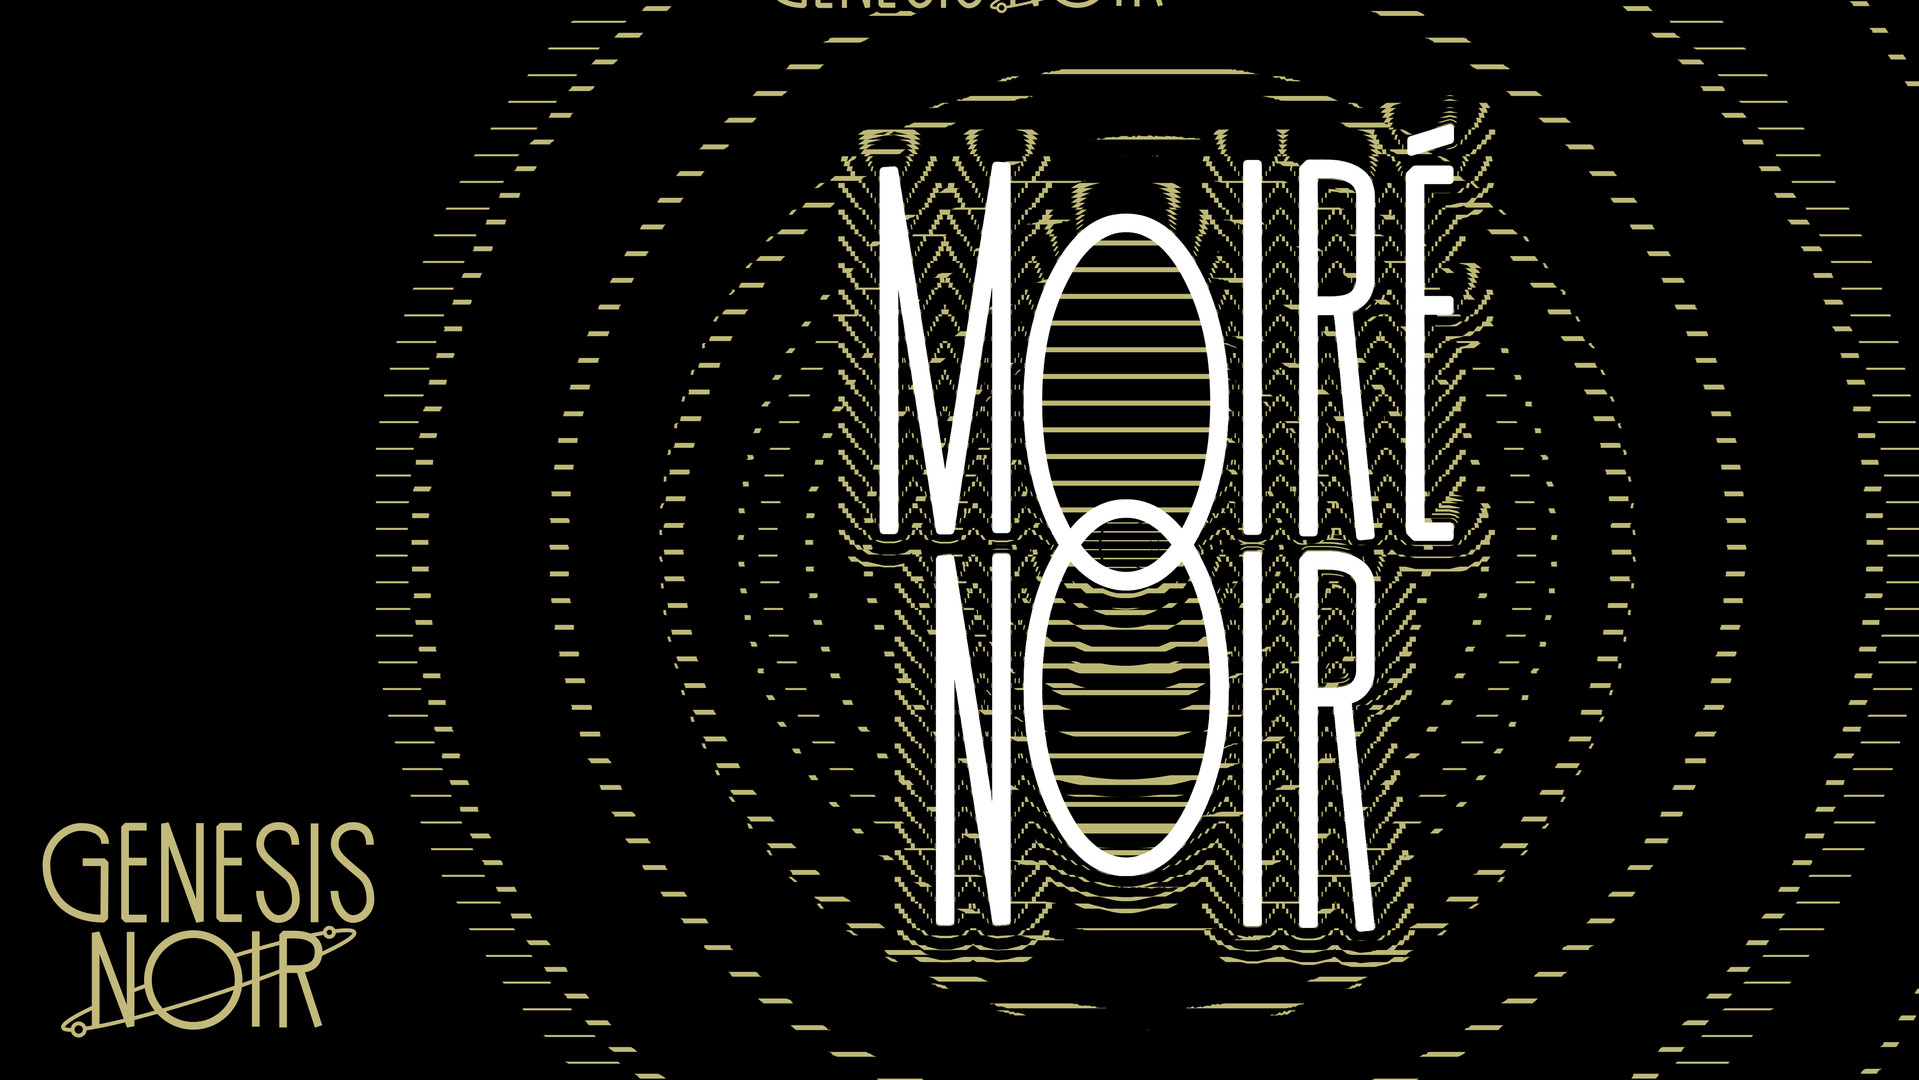 Genesis Noir: Moiré Noir Featured Screenshot #1